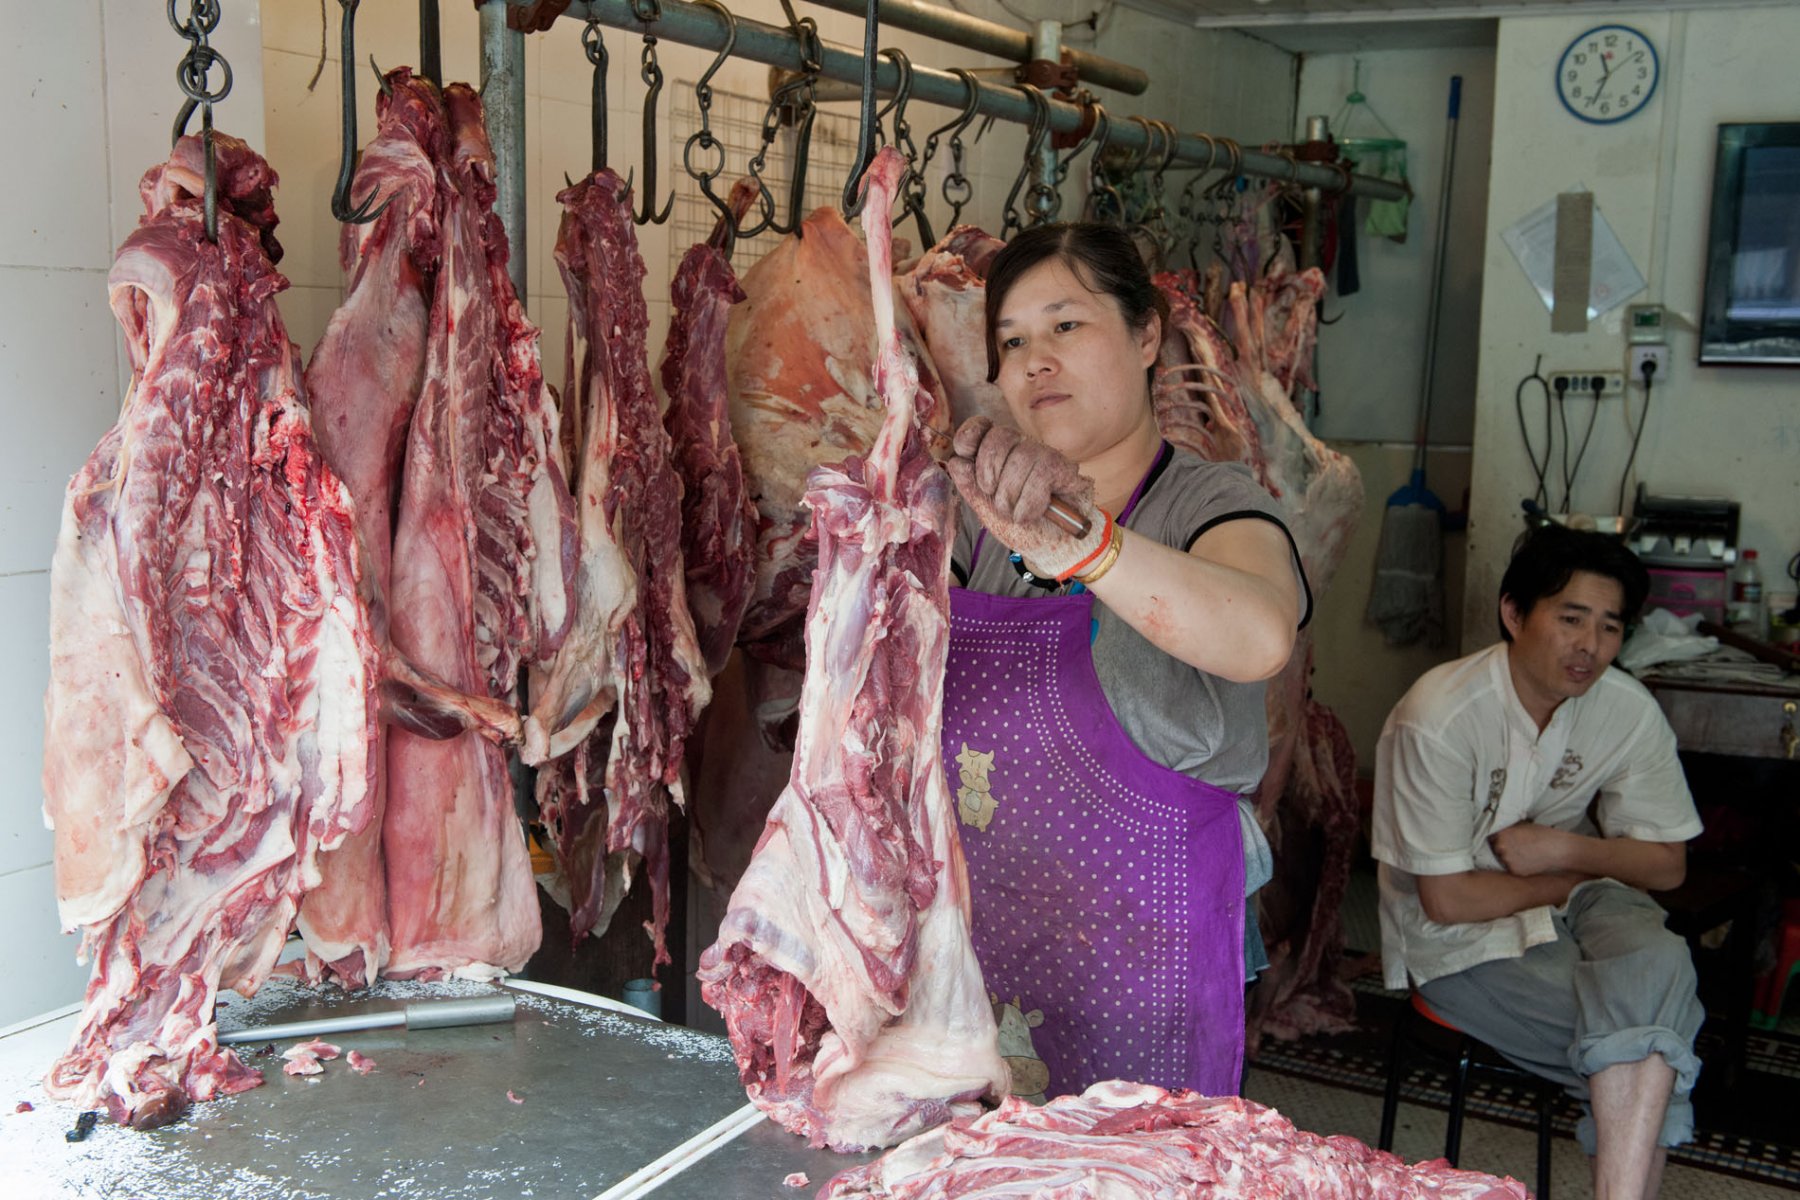 Schweinehälften zerlegt eine Verkäuferin auf ihrem Marktstand. Foto: Boris Roessler